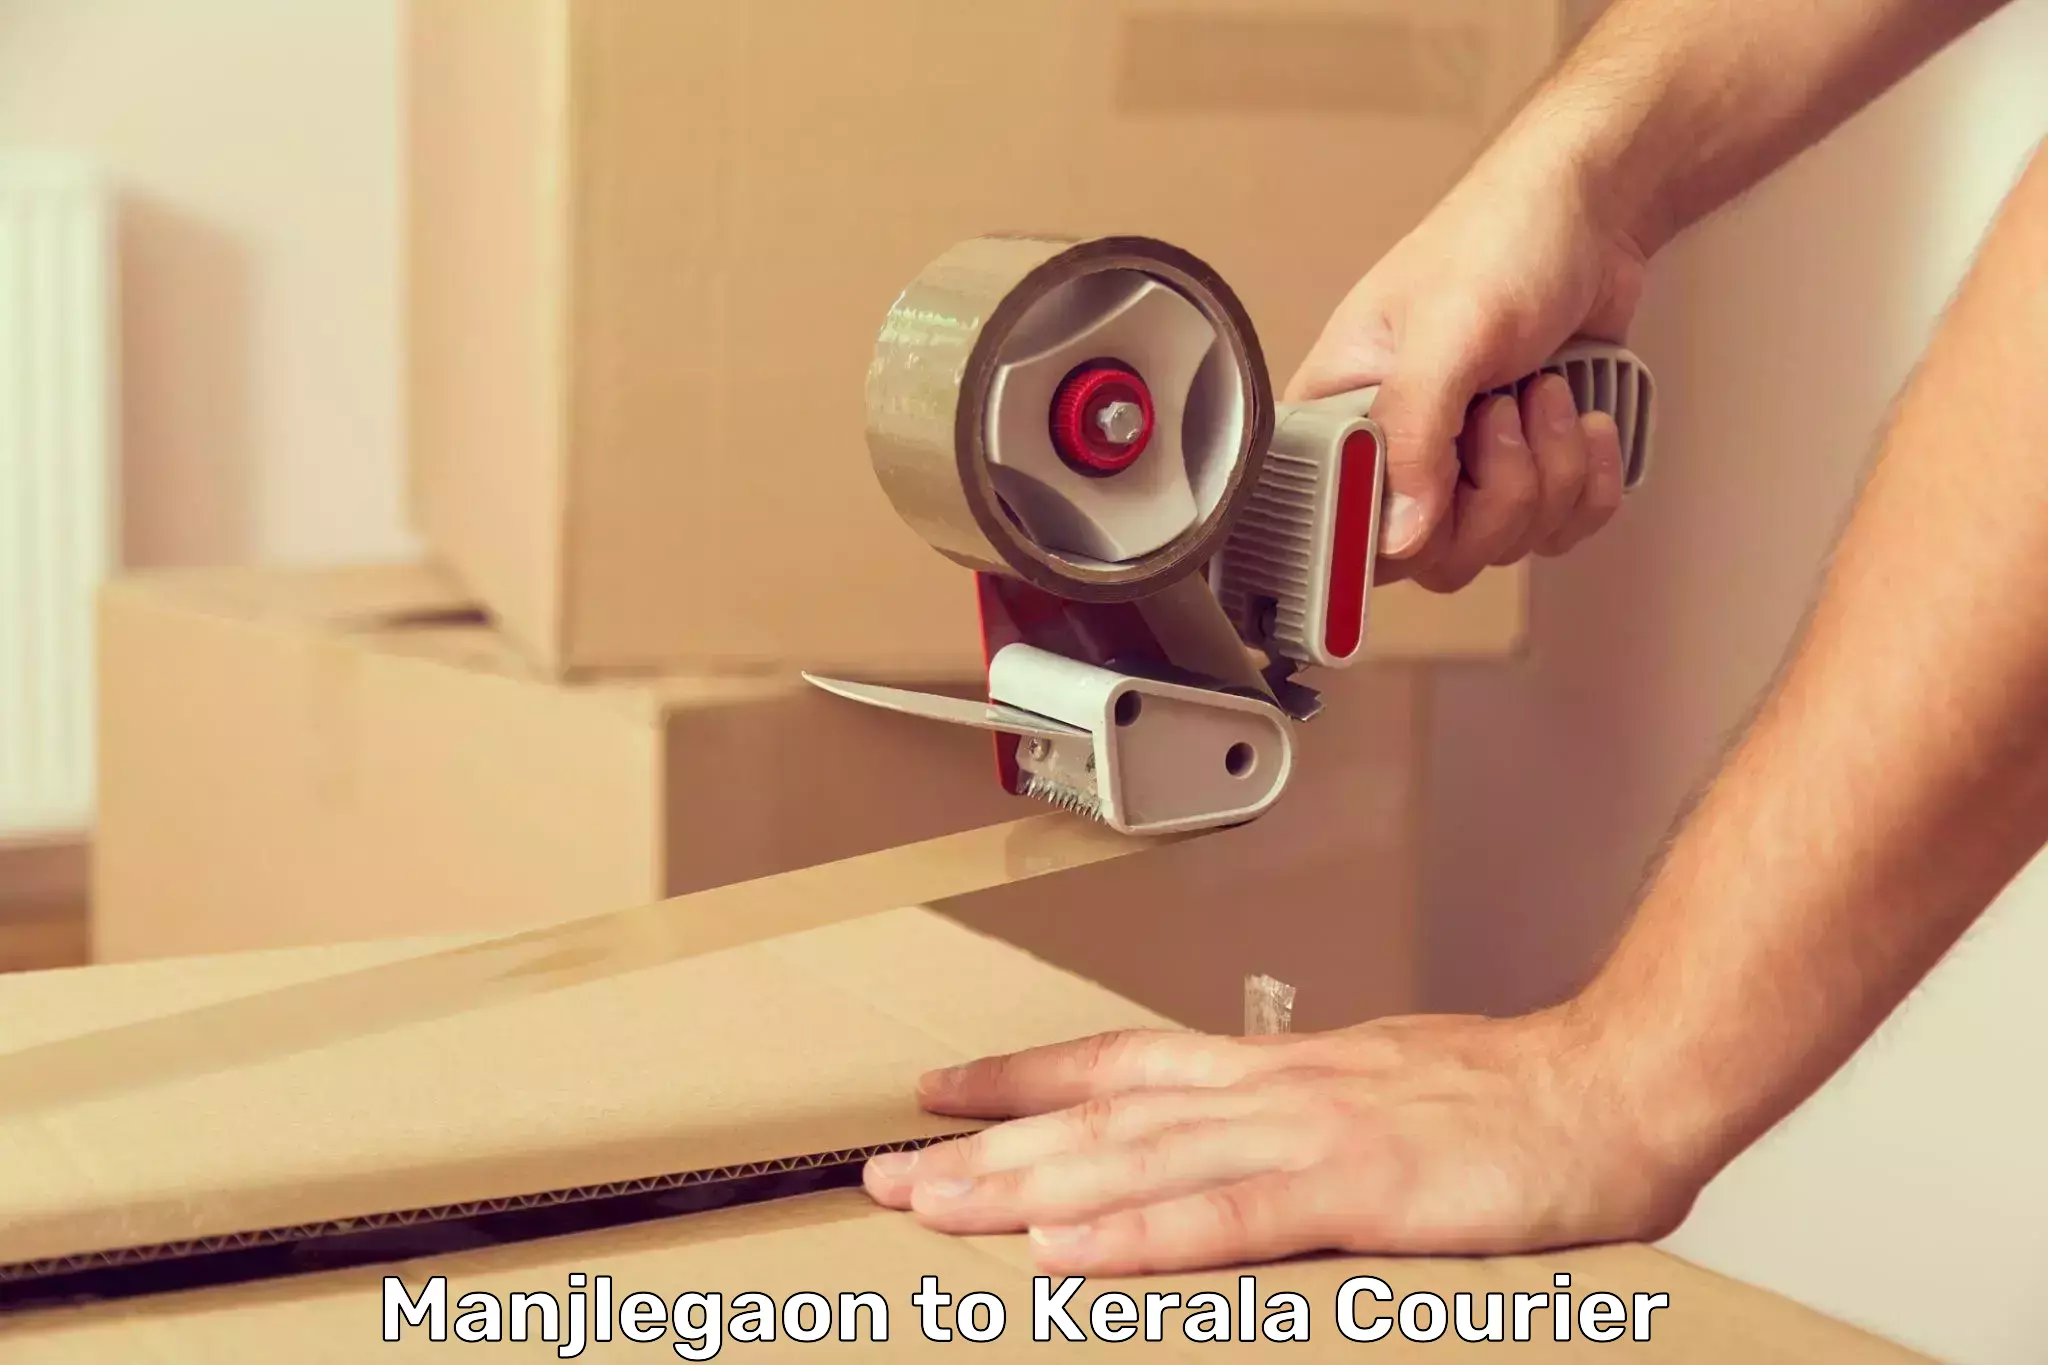 Custom courier packaging Manjlegaon to Punalur